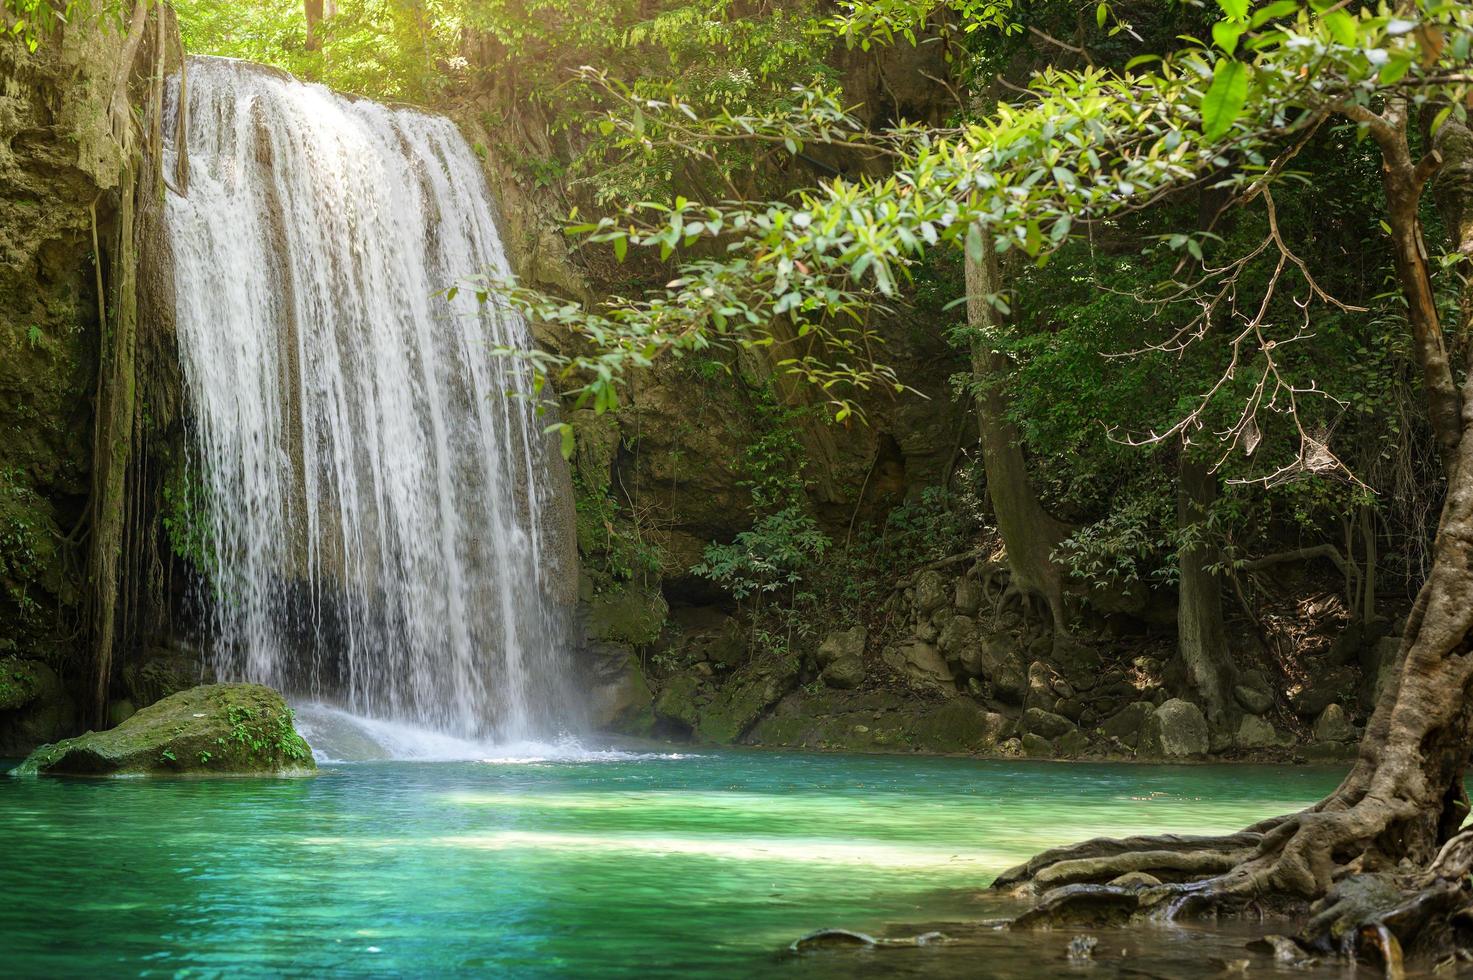 bella cascata e piscina color smeraldo nella foresta pluviale tropicale in tailandia. foto